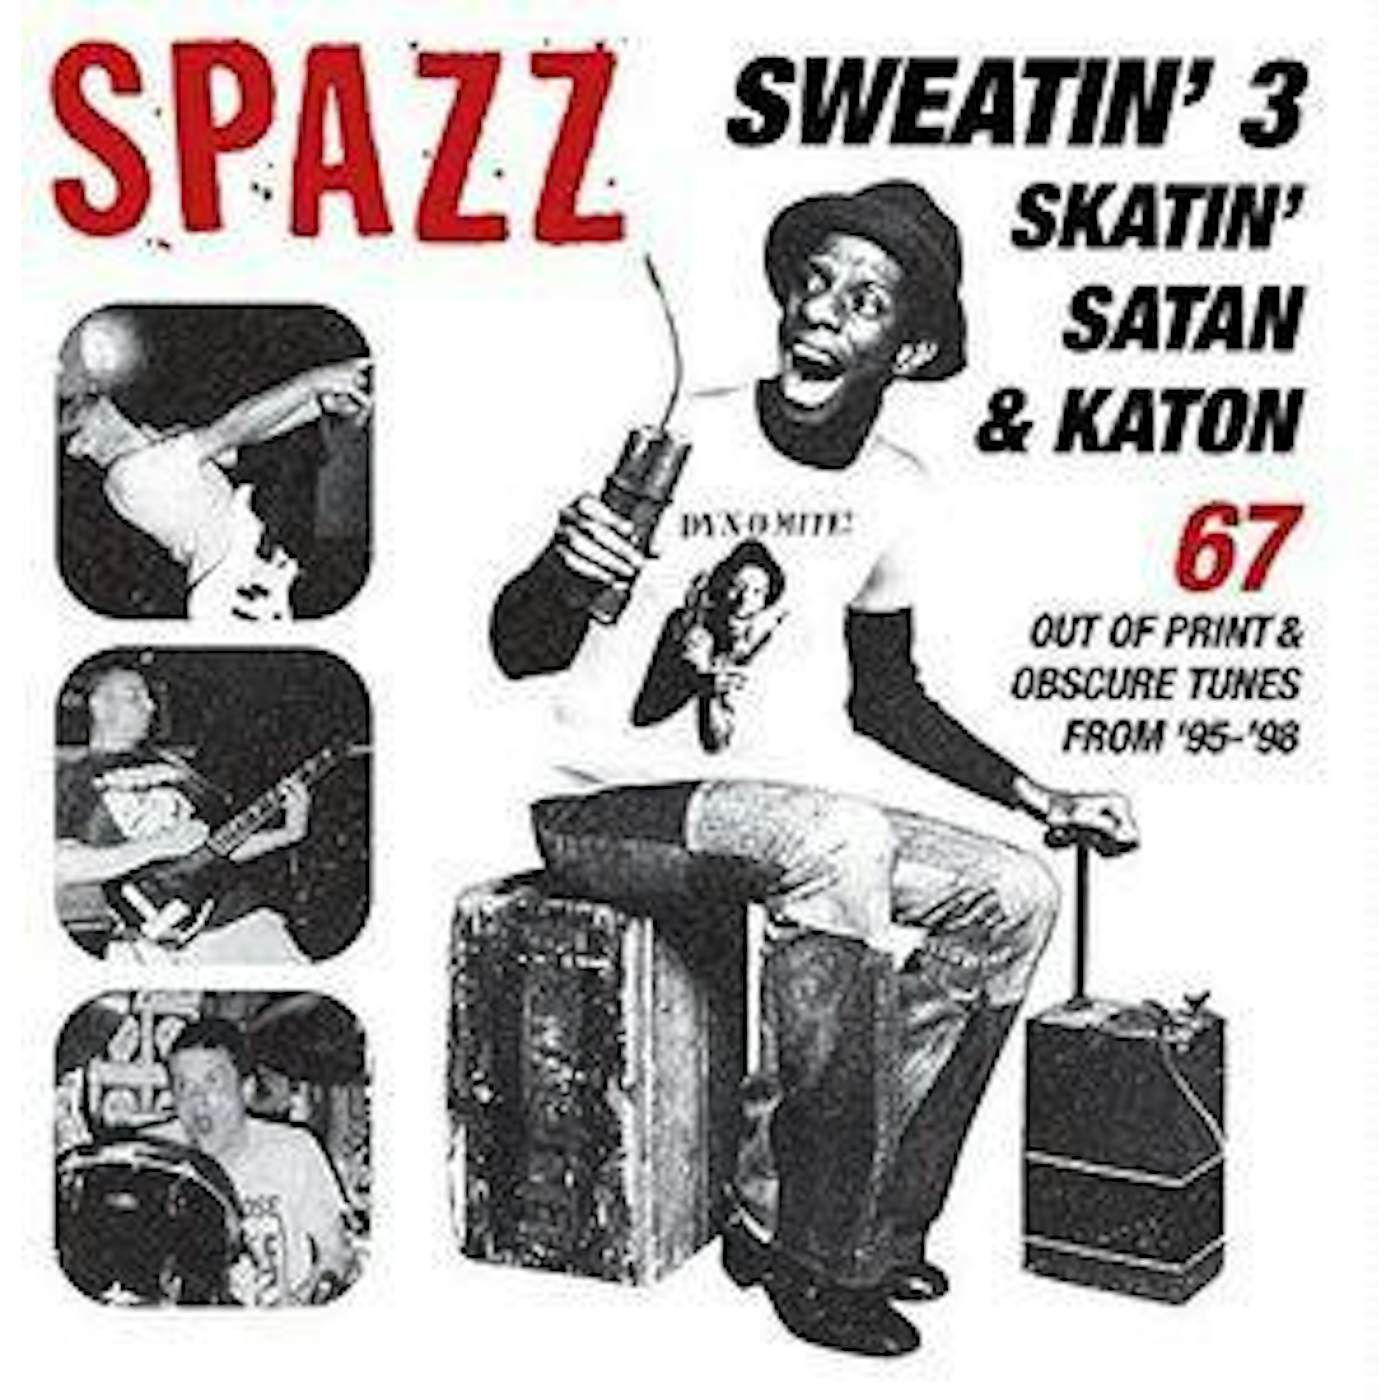 Spazz SWEATIN 3: SKATIN SATAN & KATON CD